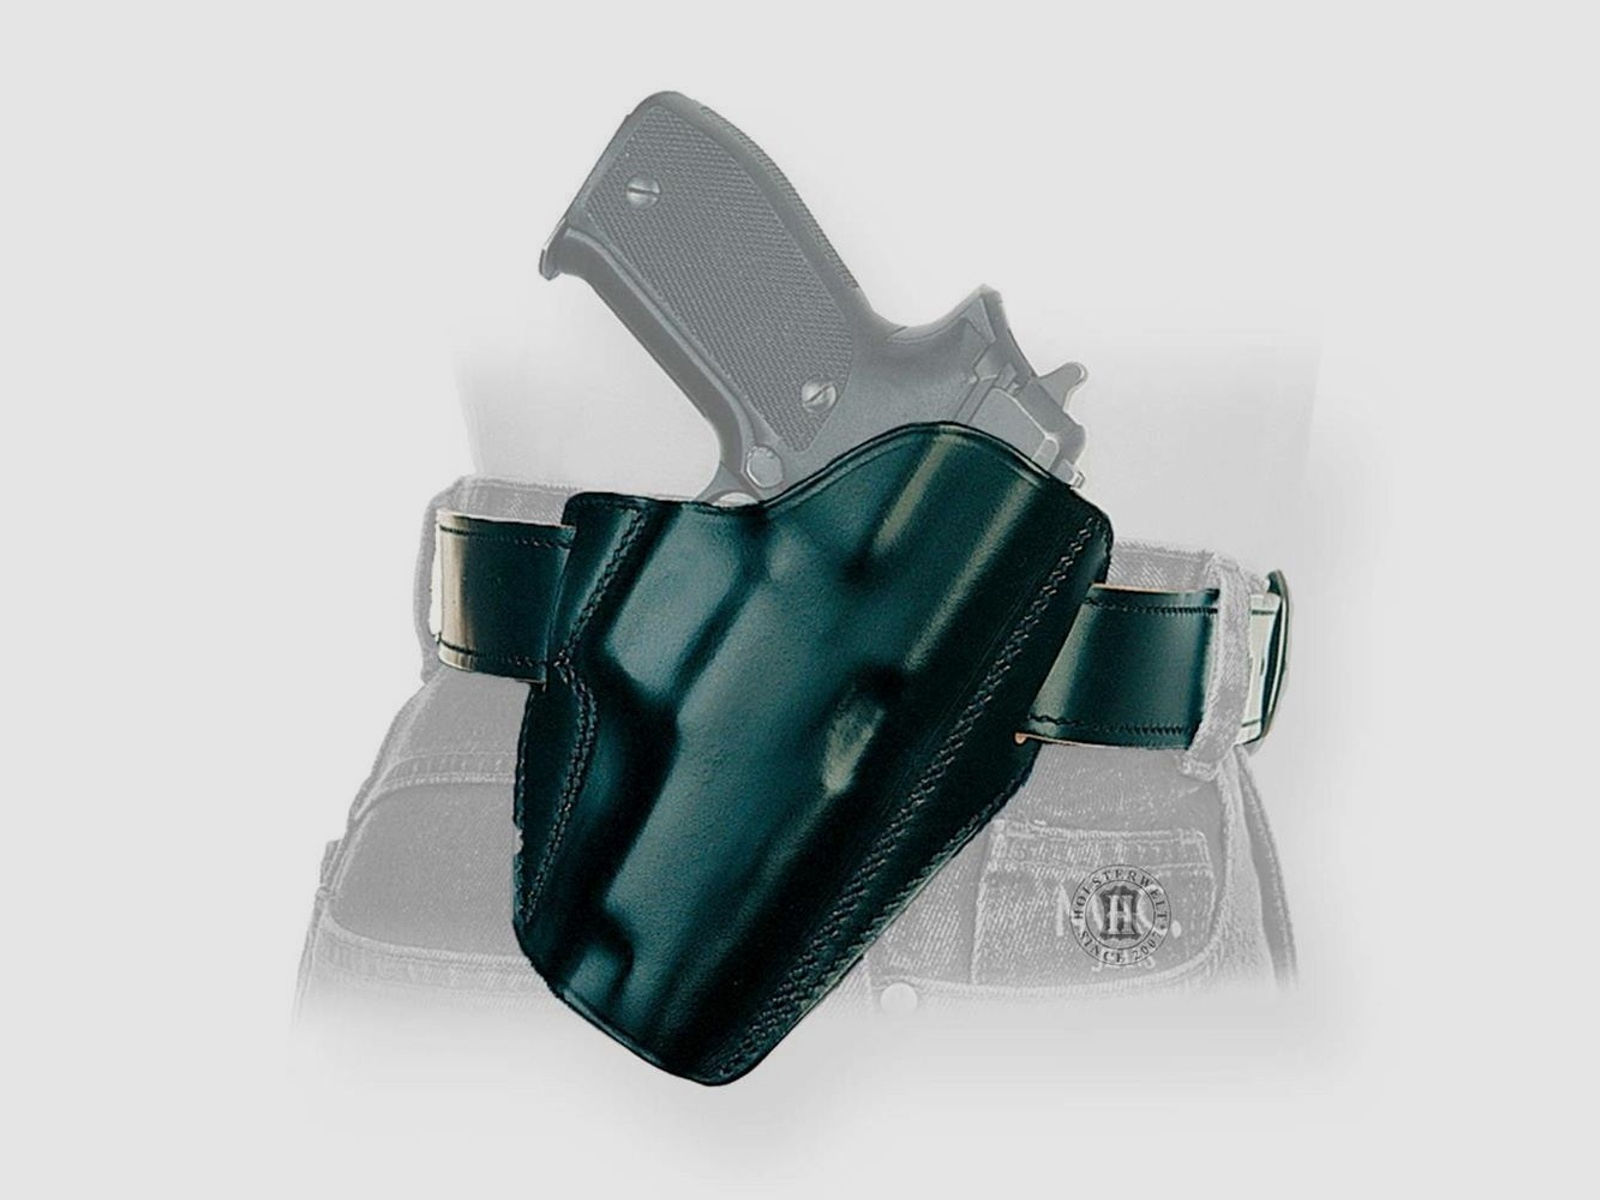 Schnellziehholster LIGHTNING "FBI" Glock 42-Rechtshänder-Braun